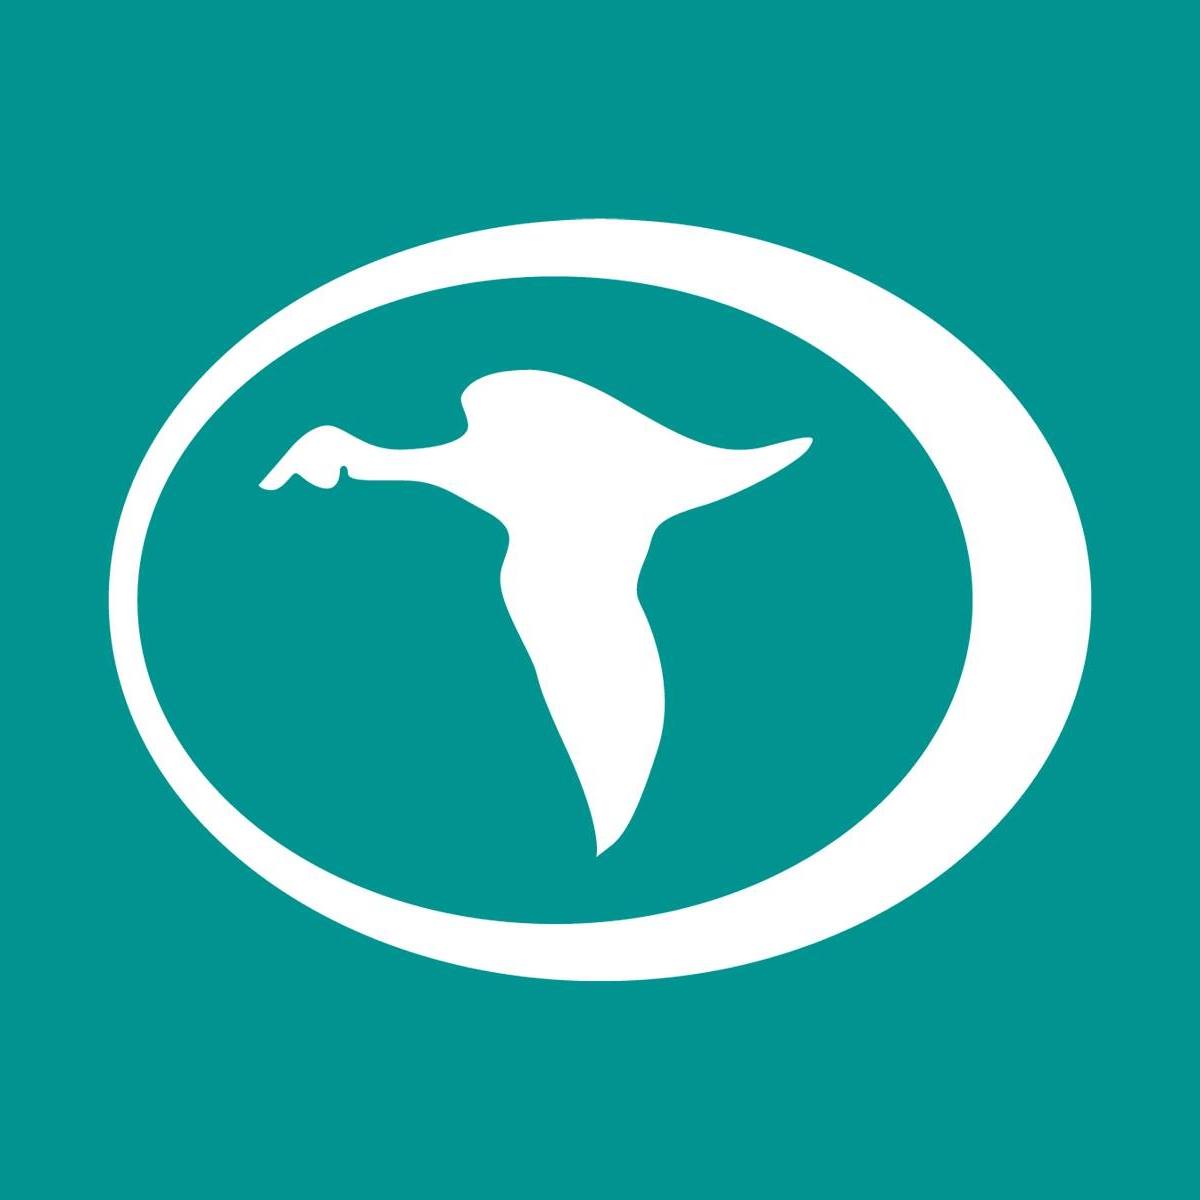 Company logo of Teal Construction Company